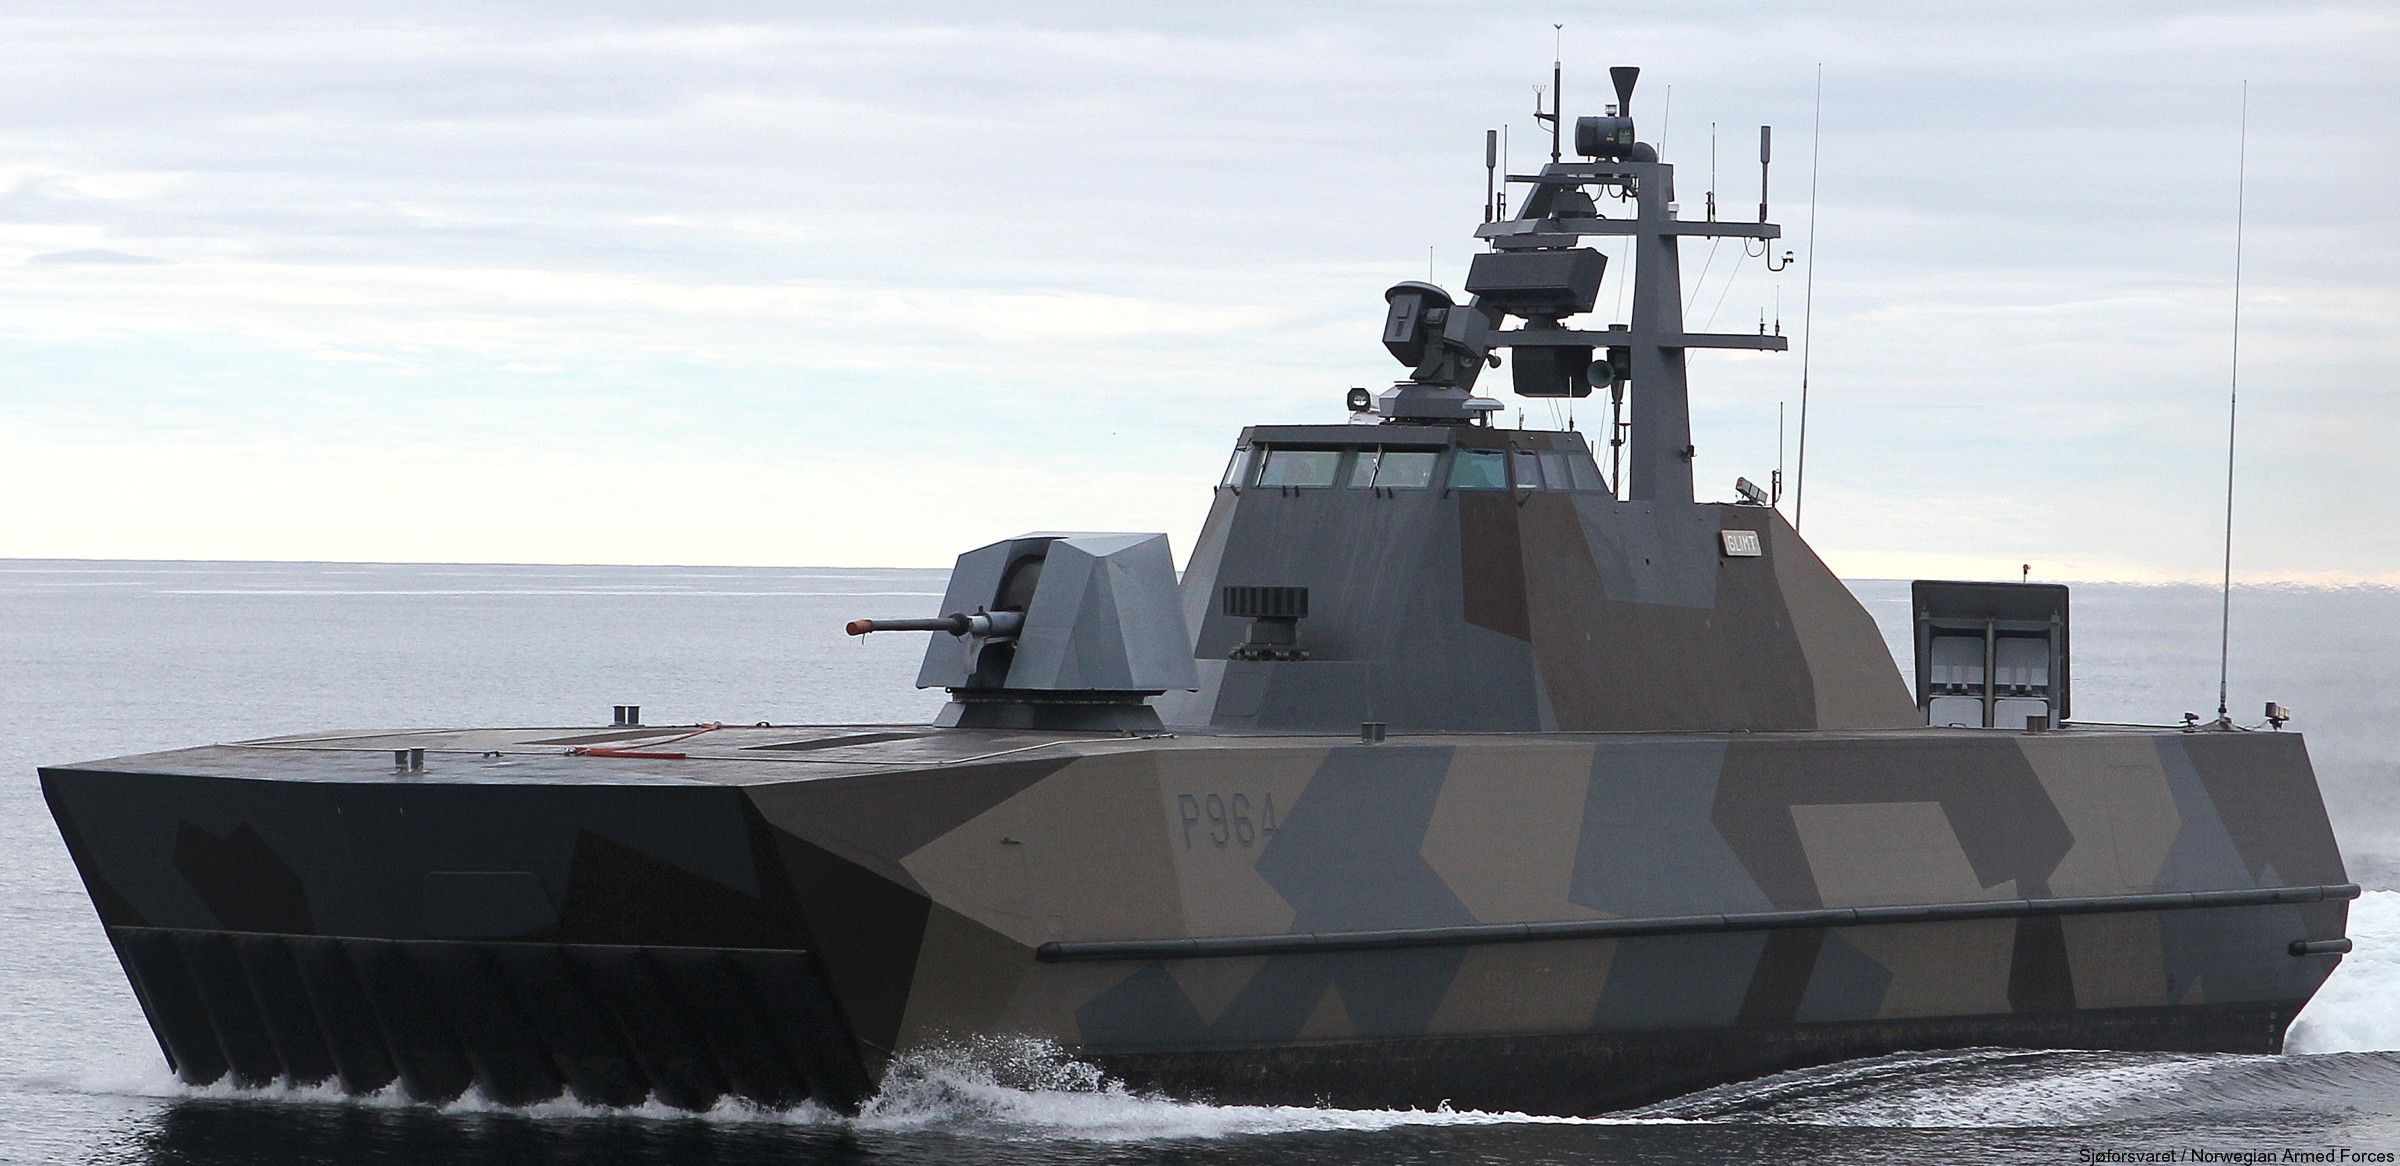 p-964 hnoms glimt knm skjold class corvette royal norwegian navy sjoforsvaret umoe mandal 11x